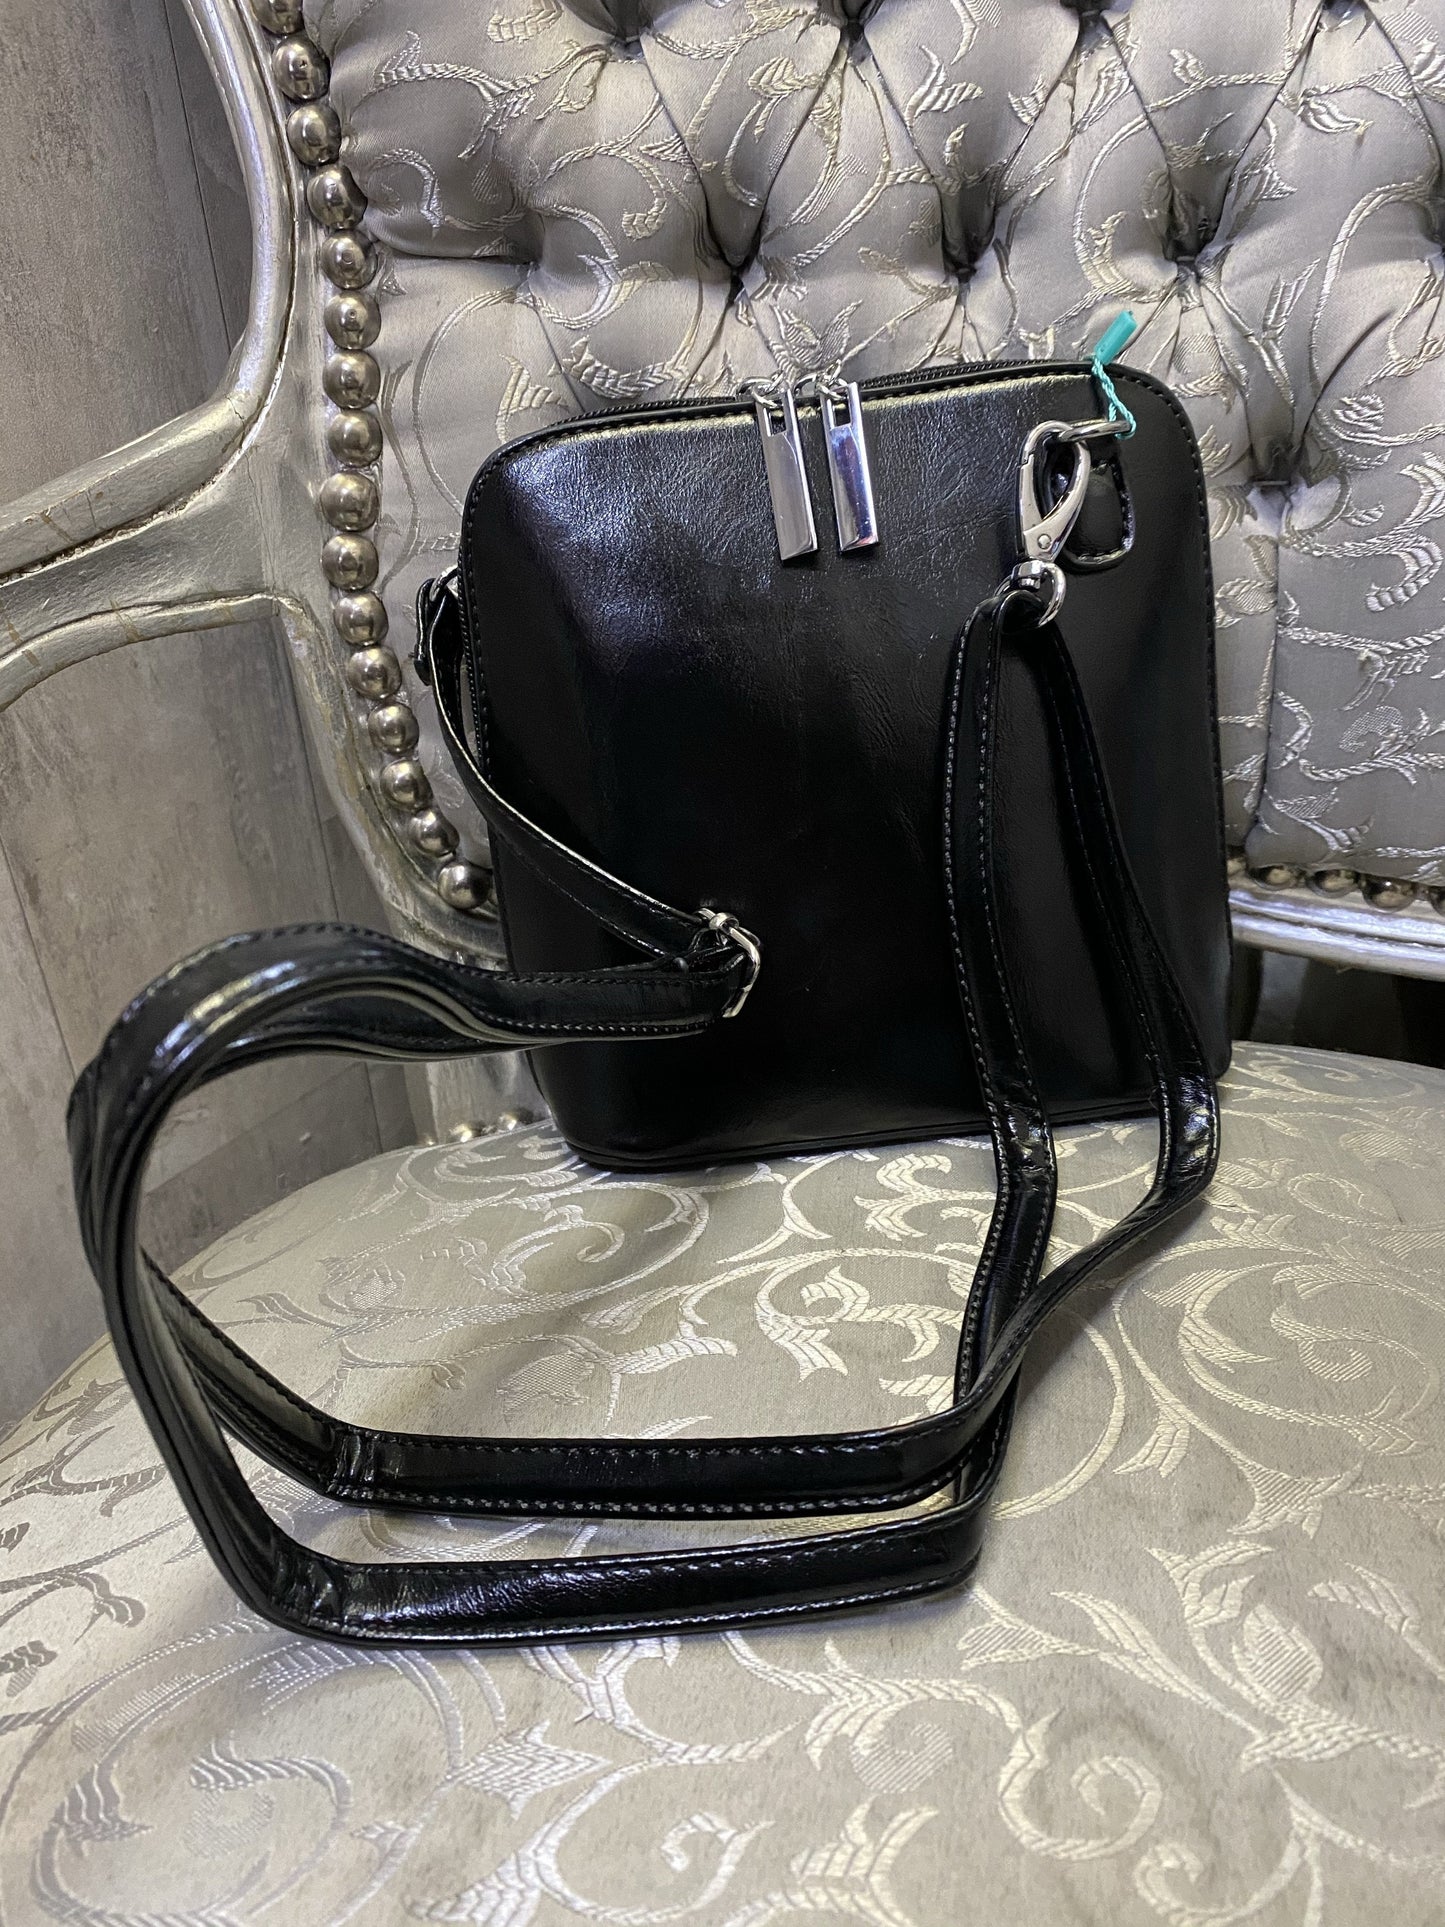 Black chic bag with long shoulder strap